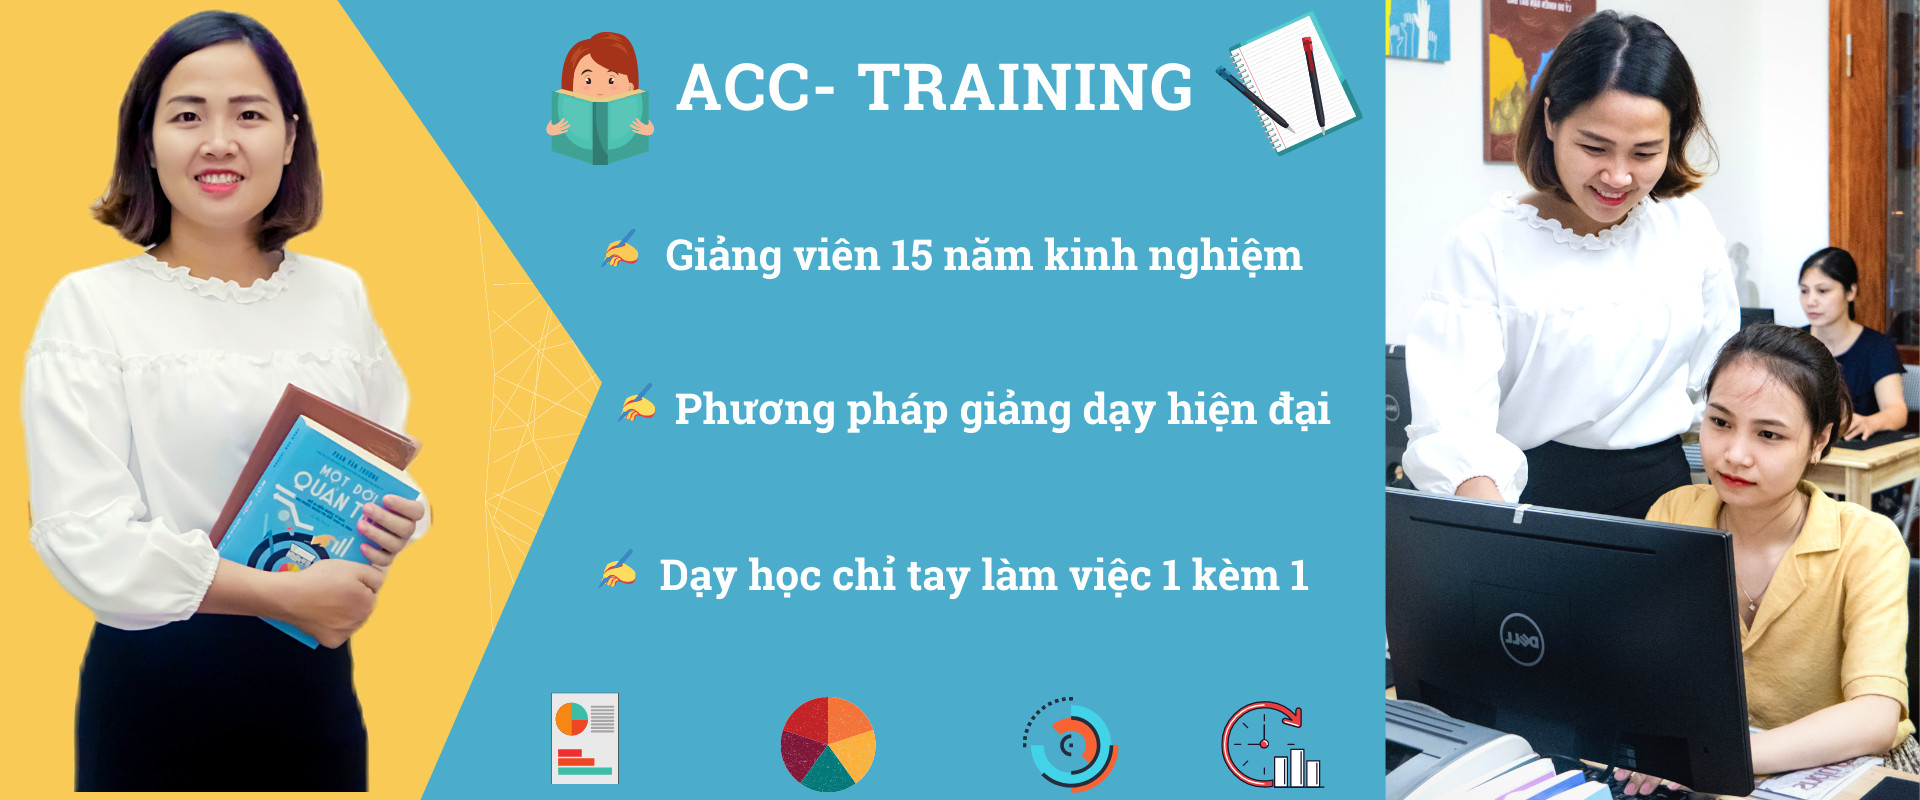 ACC Training - Đào tạo kế toán